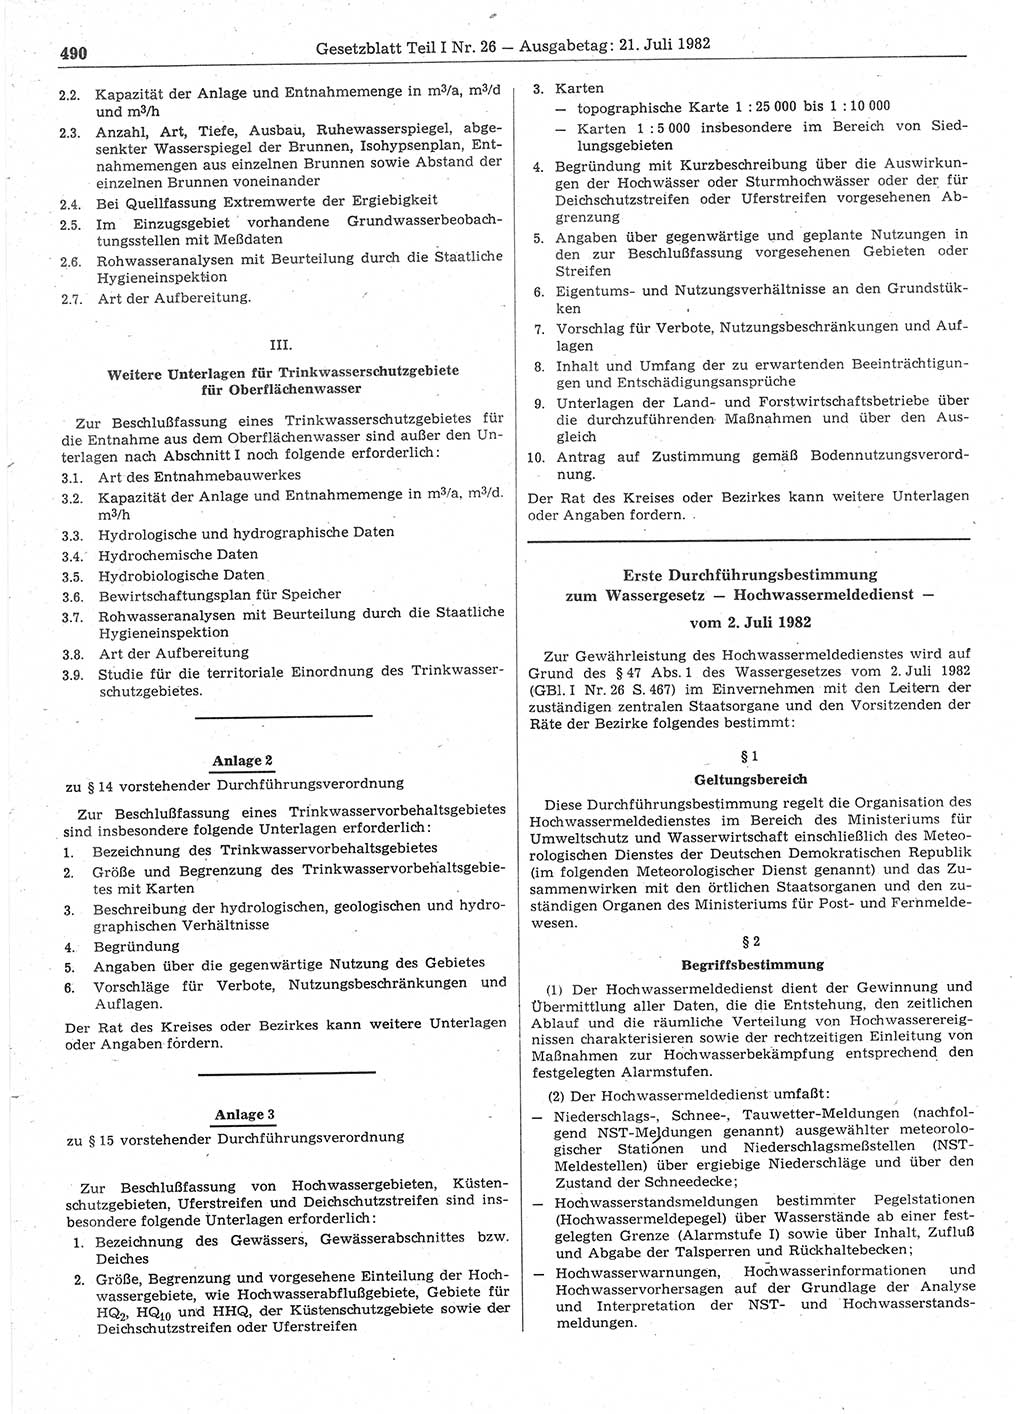 Gesetzblatt (GBl.) der Deutschen Demokratischen Republik (DDR) Teil Ⅰ 1982, Seite 490 (GBl. DDR Ⅰ 1982, S. 490)